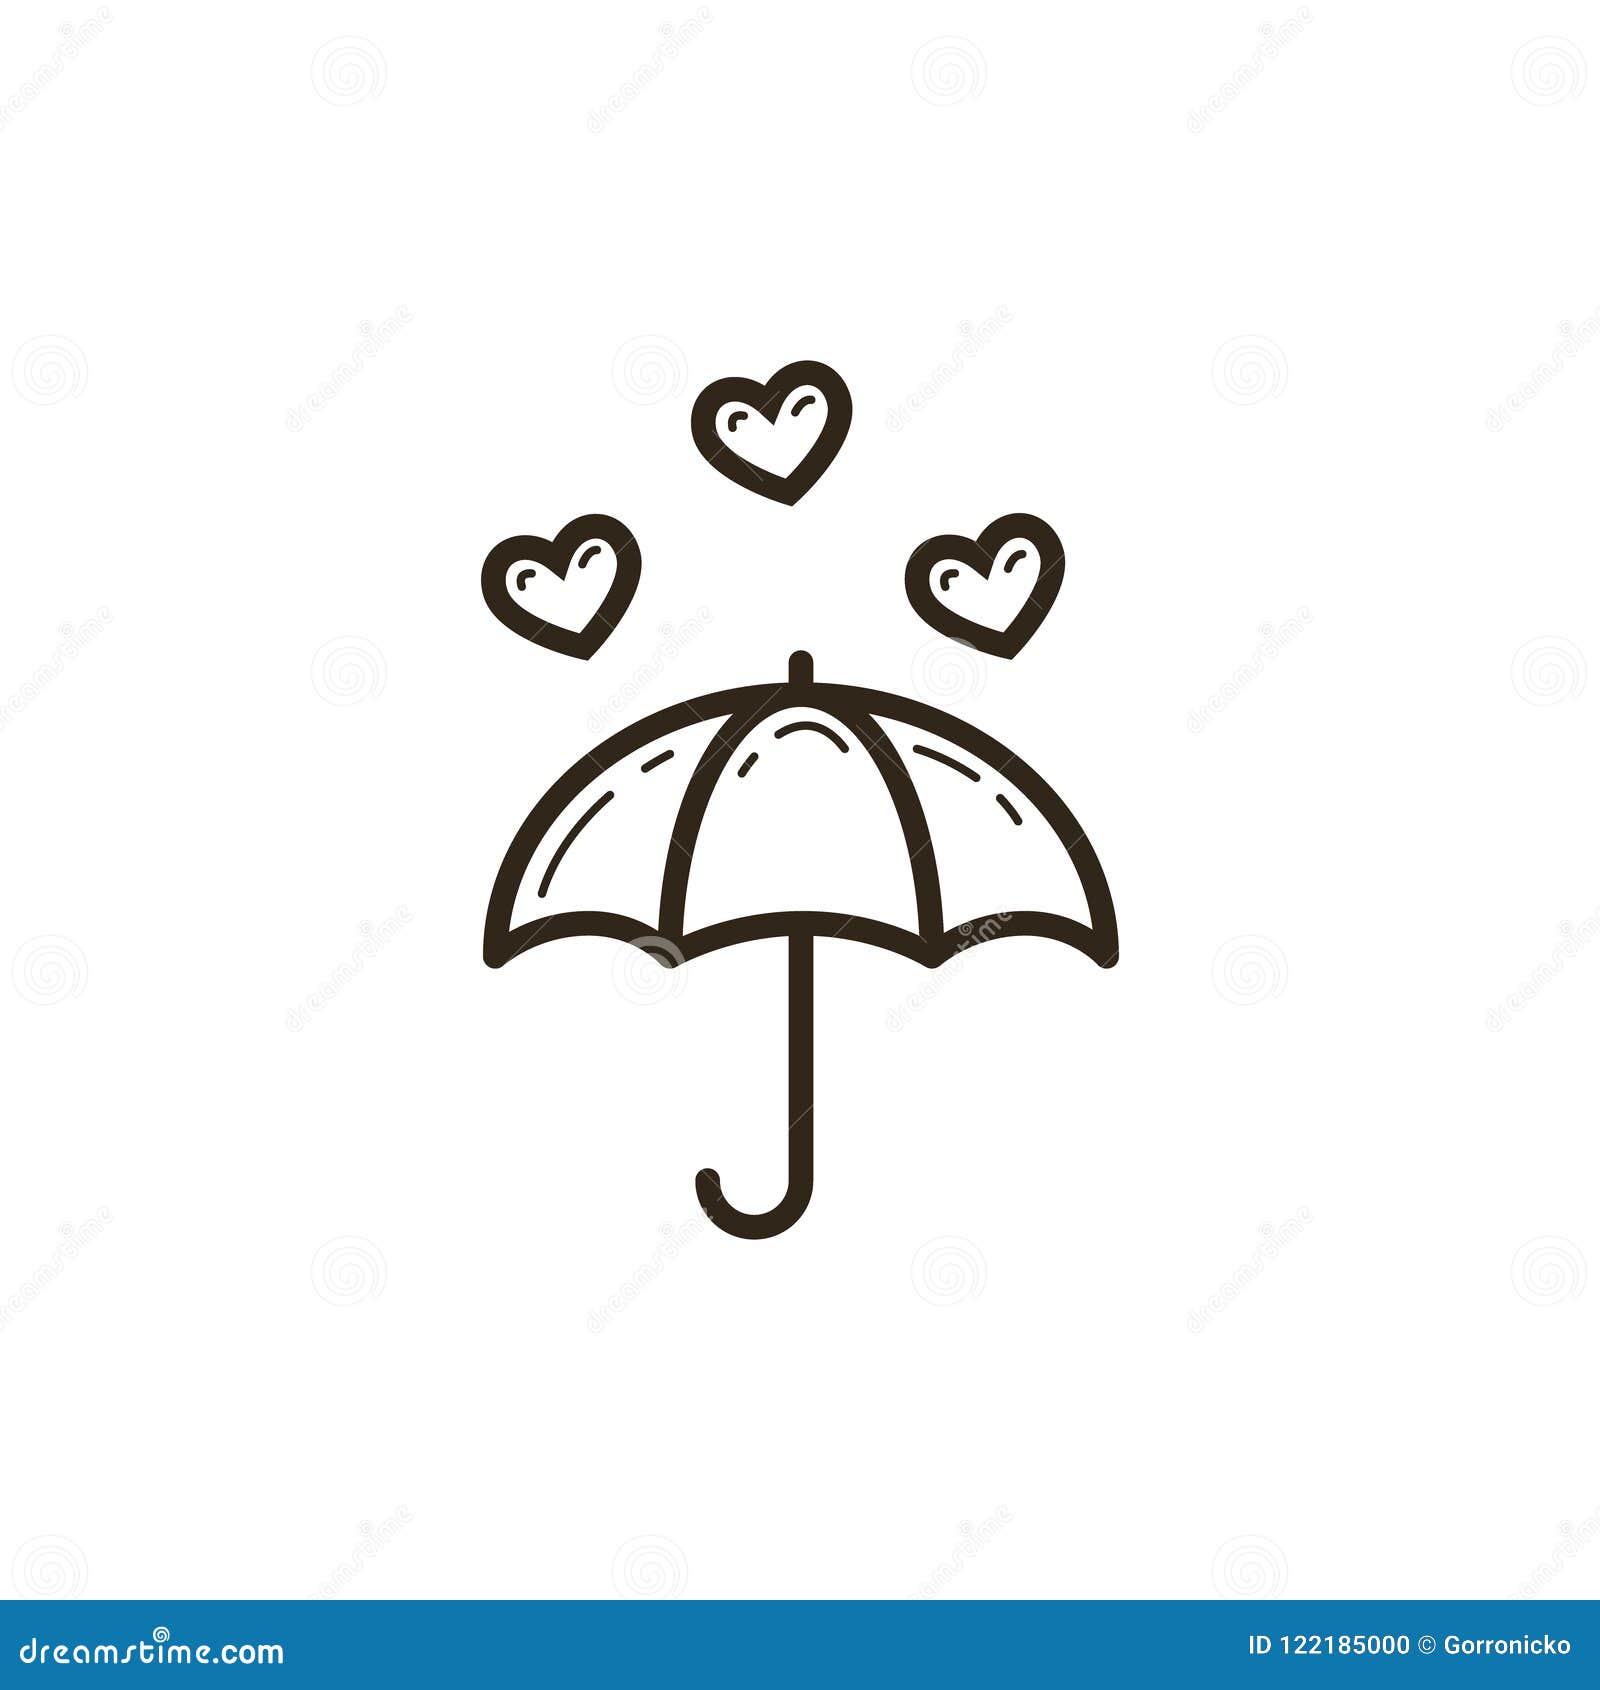 Umbrella  Umbrella tattoo Cool tattoos Trendy tattoos